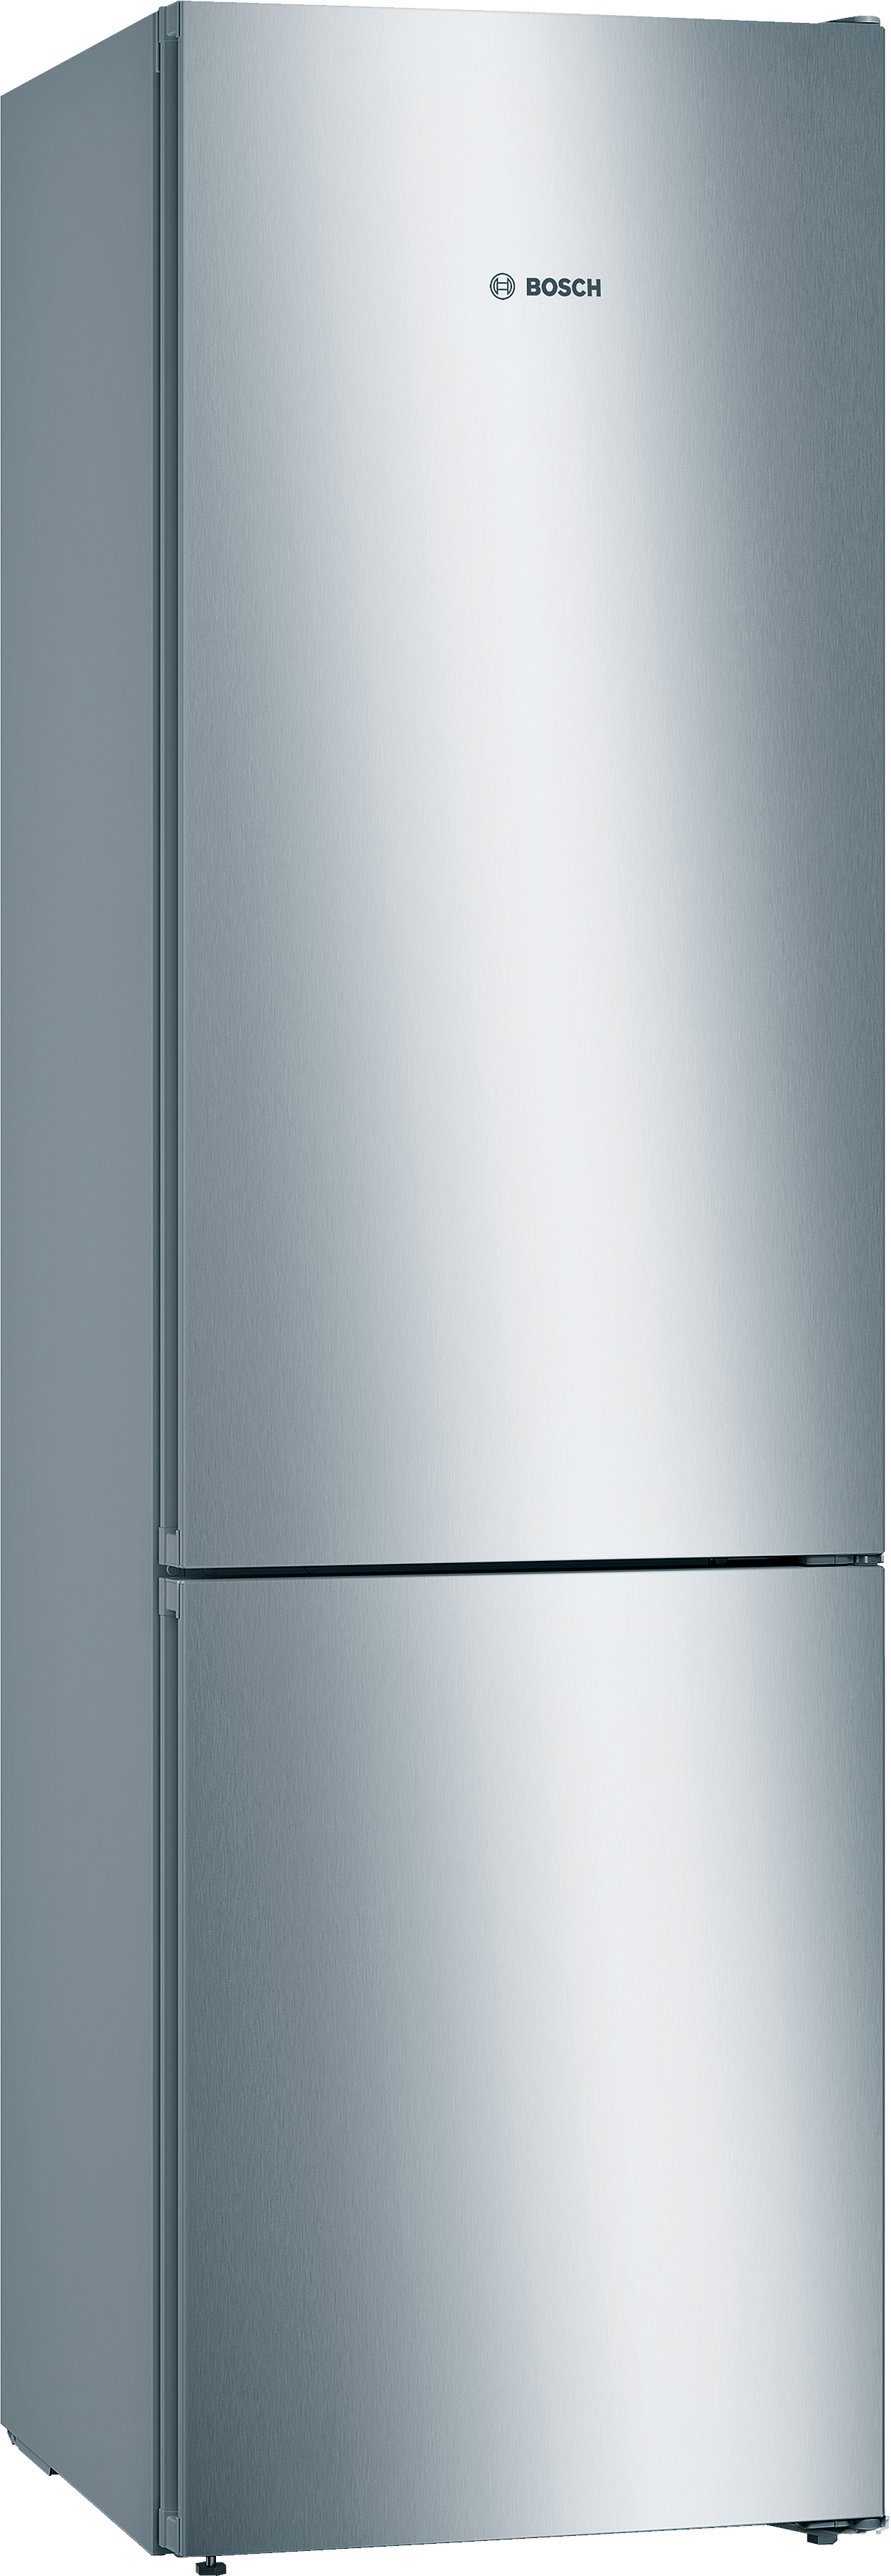 Цена холодильник Bosch KGN39VL316 в Киеве